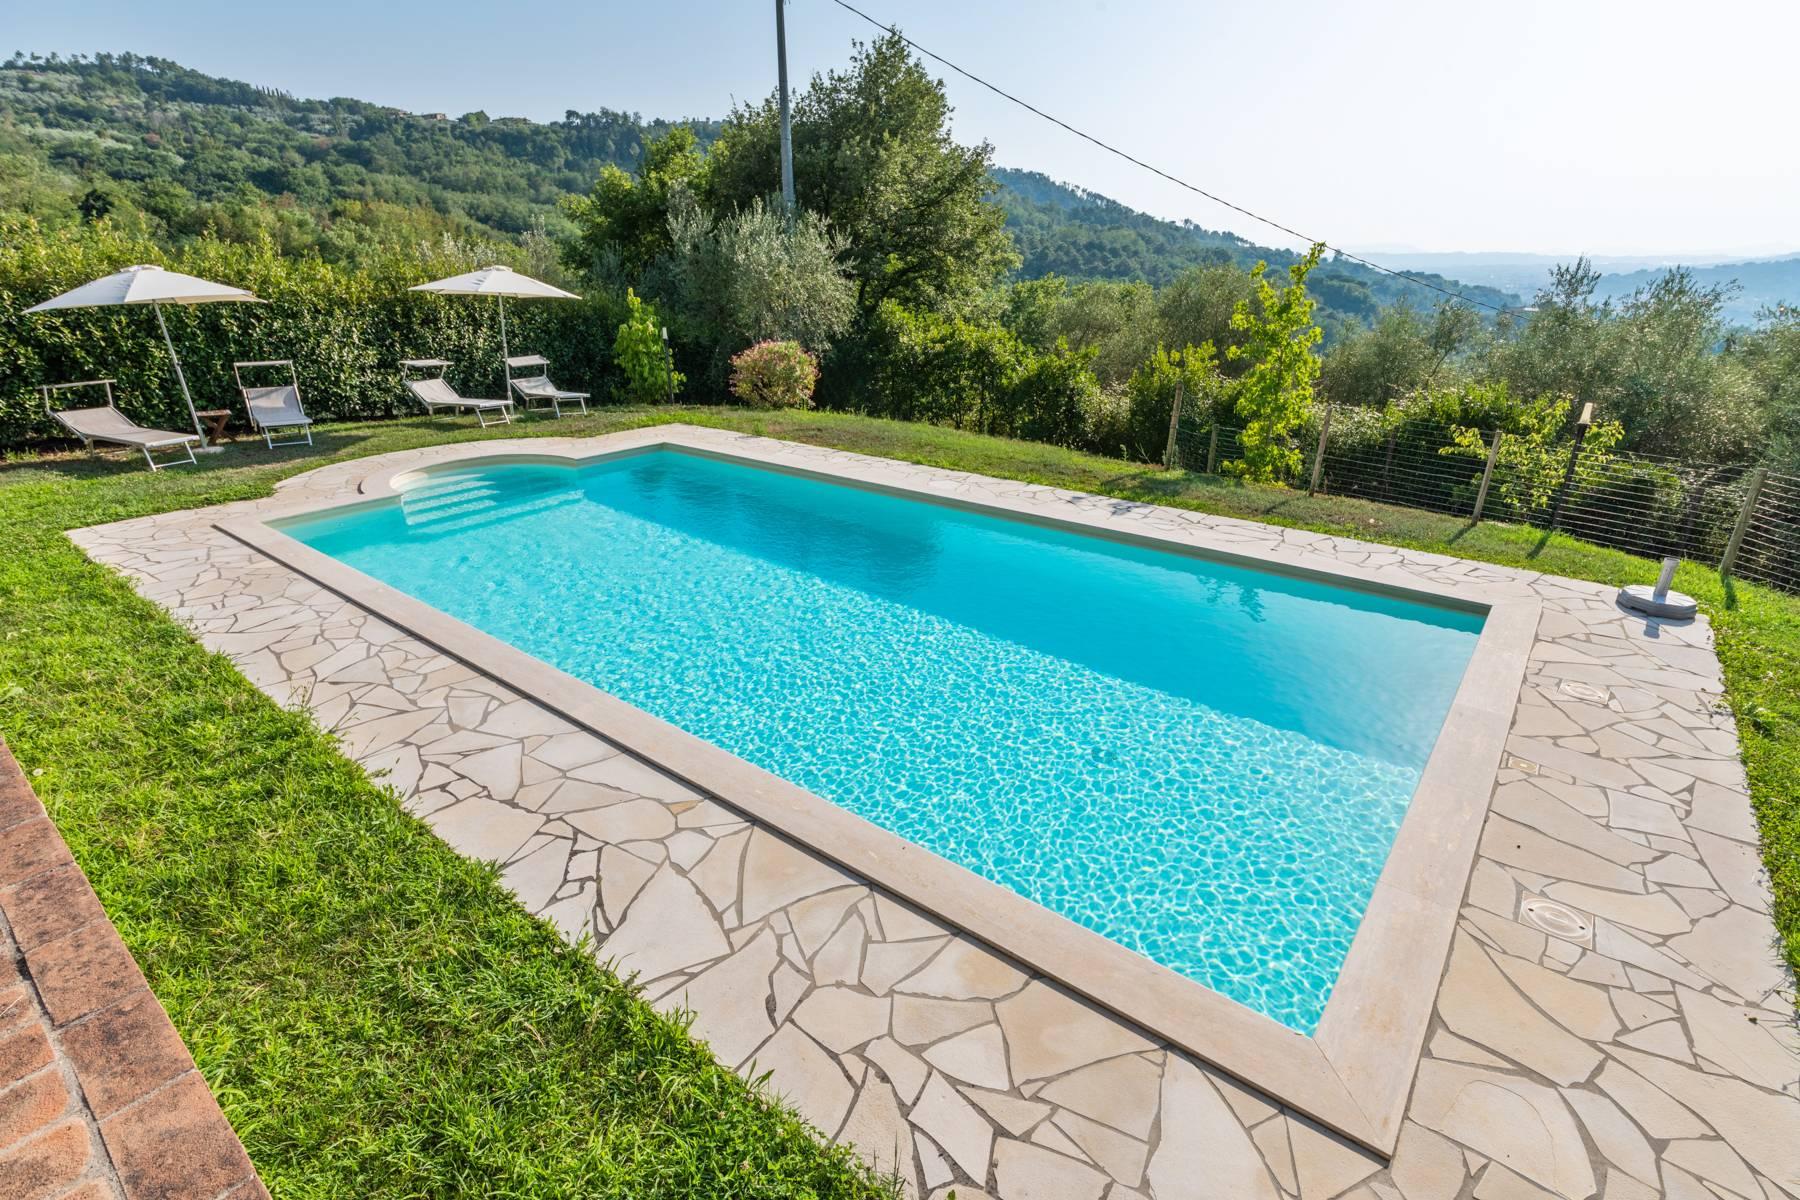 Charmante maison de campagne avec piscine sur les collines toscanes - 3